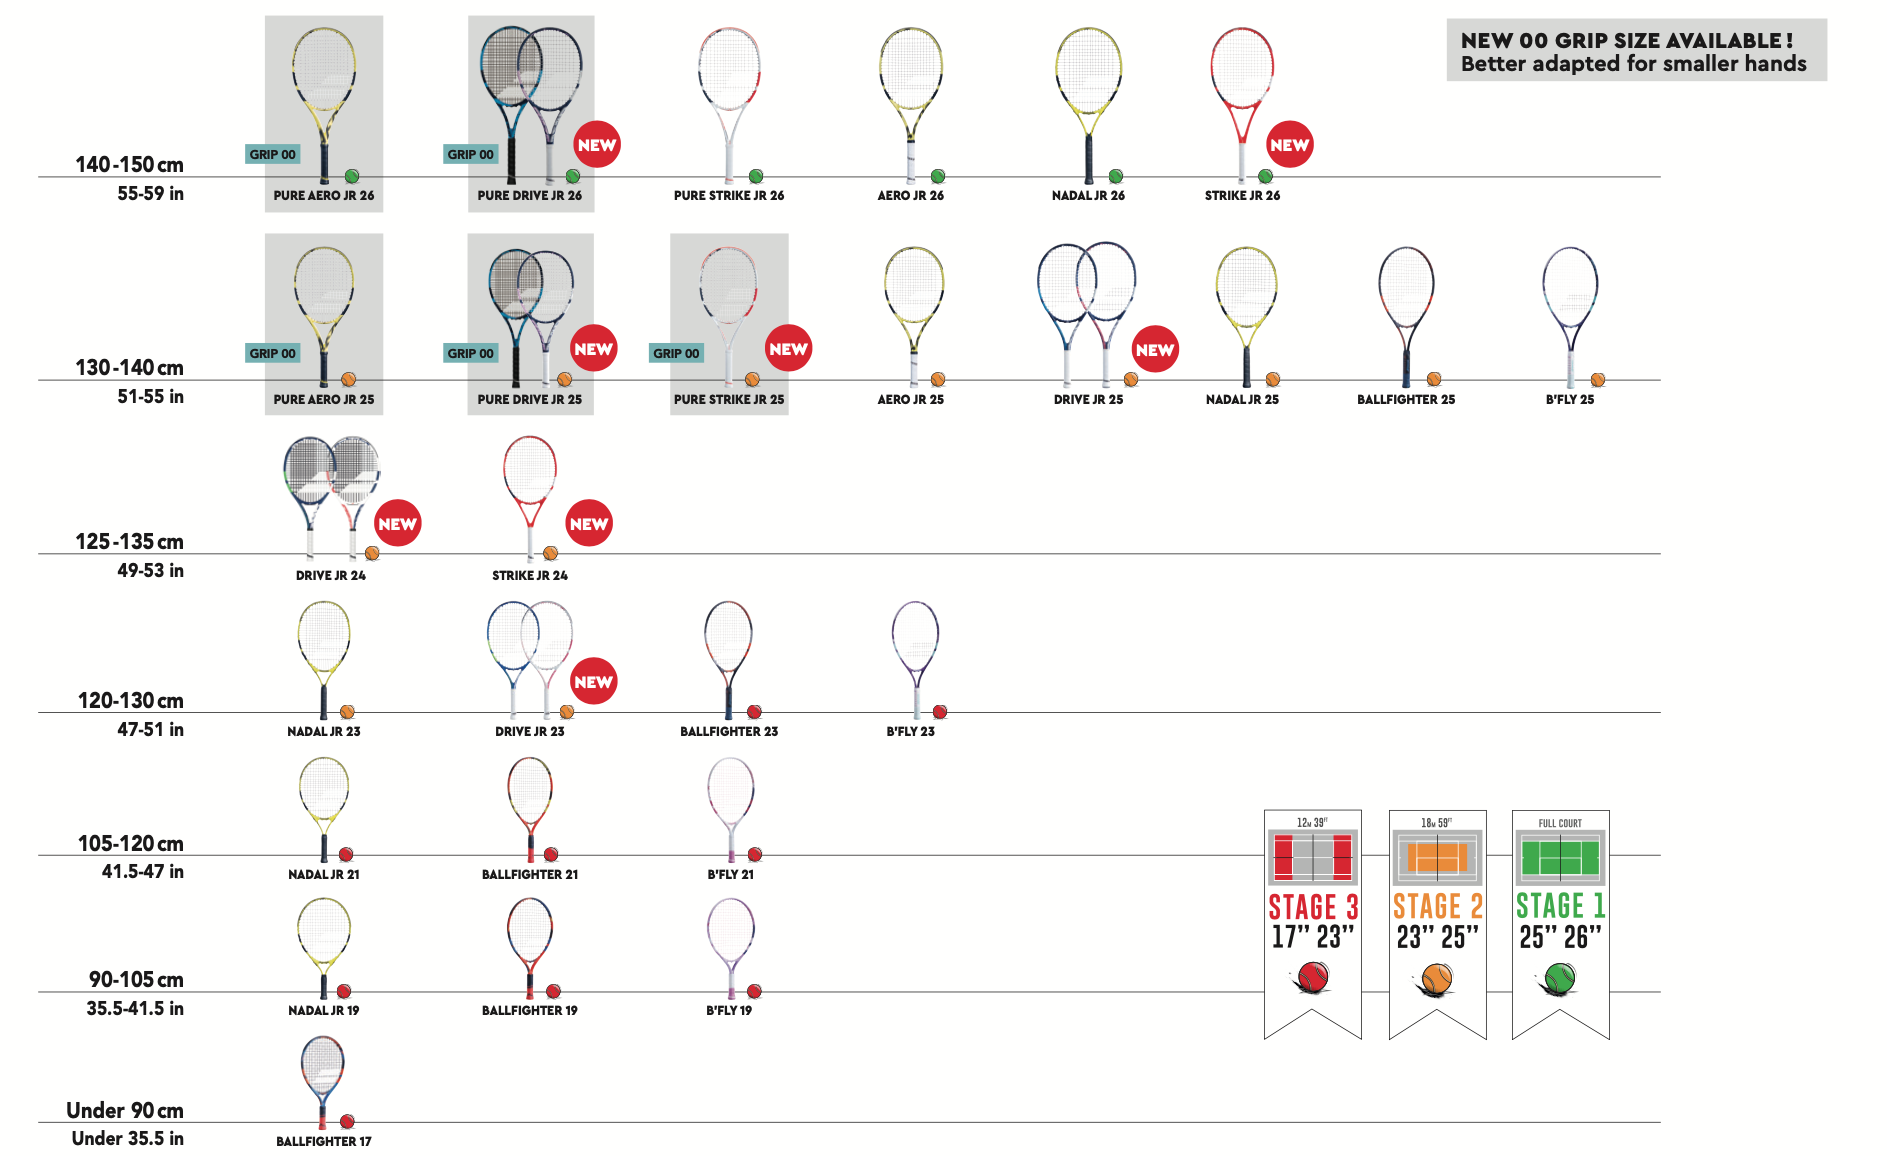 Cómo saber el tamaño del grip para tu raqueta? - Game Set Match